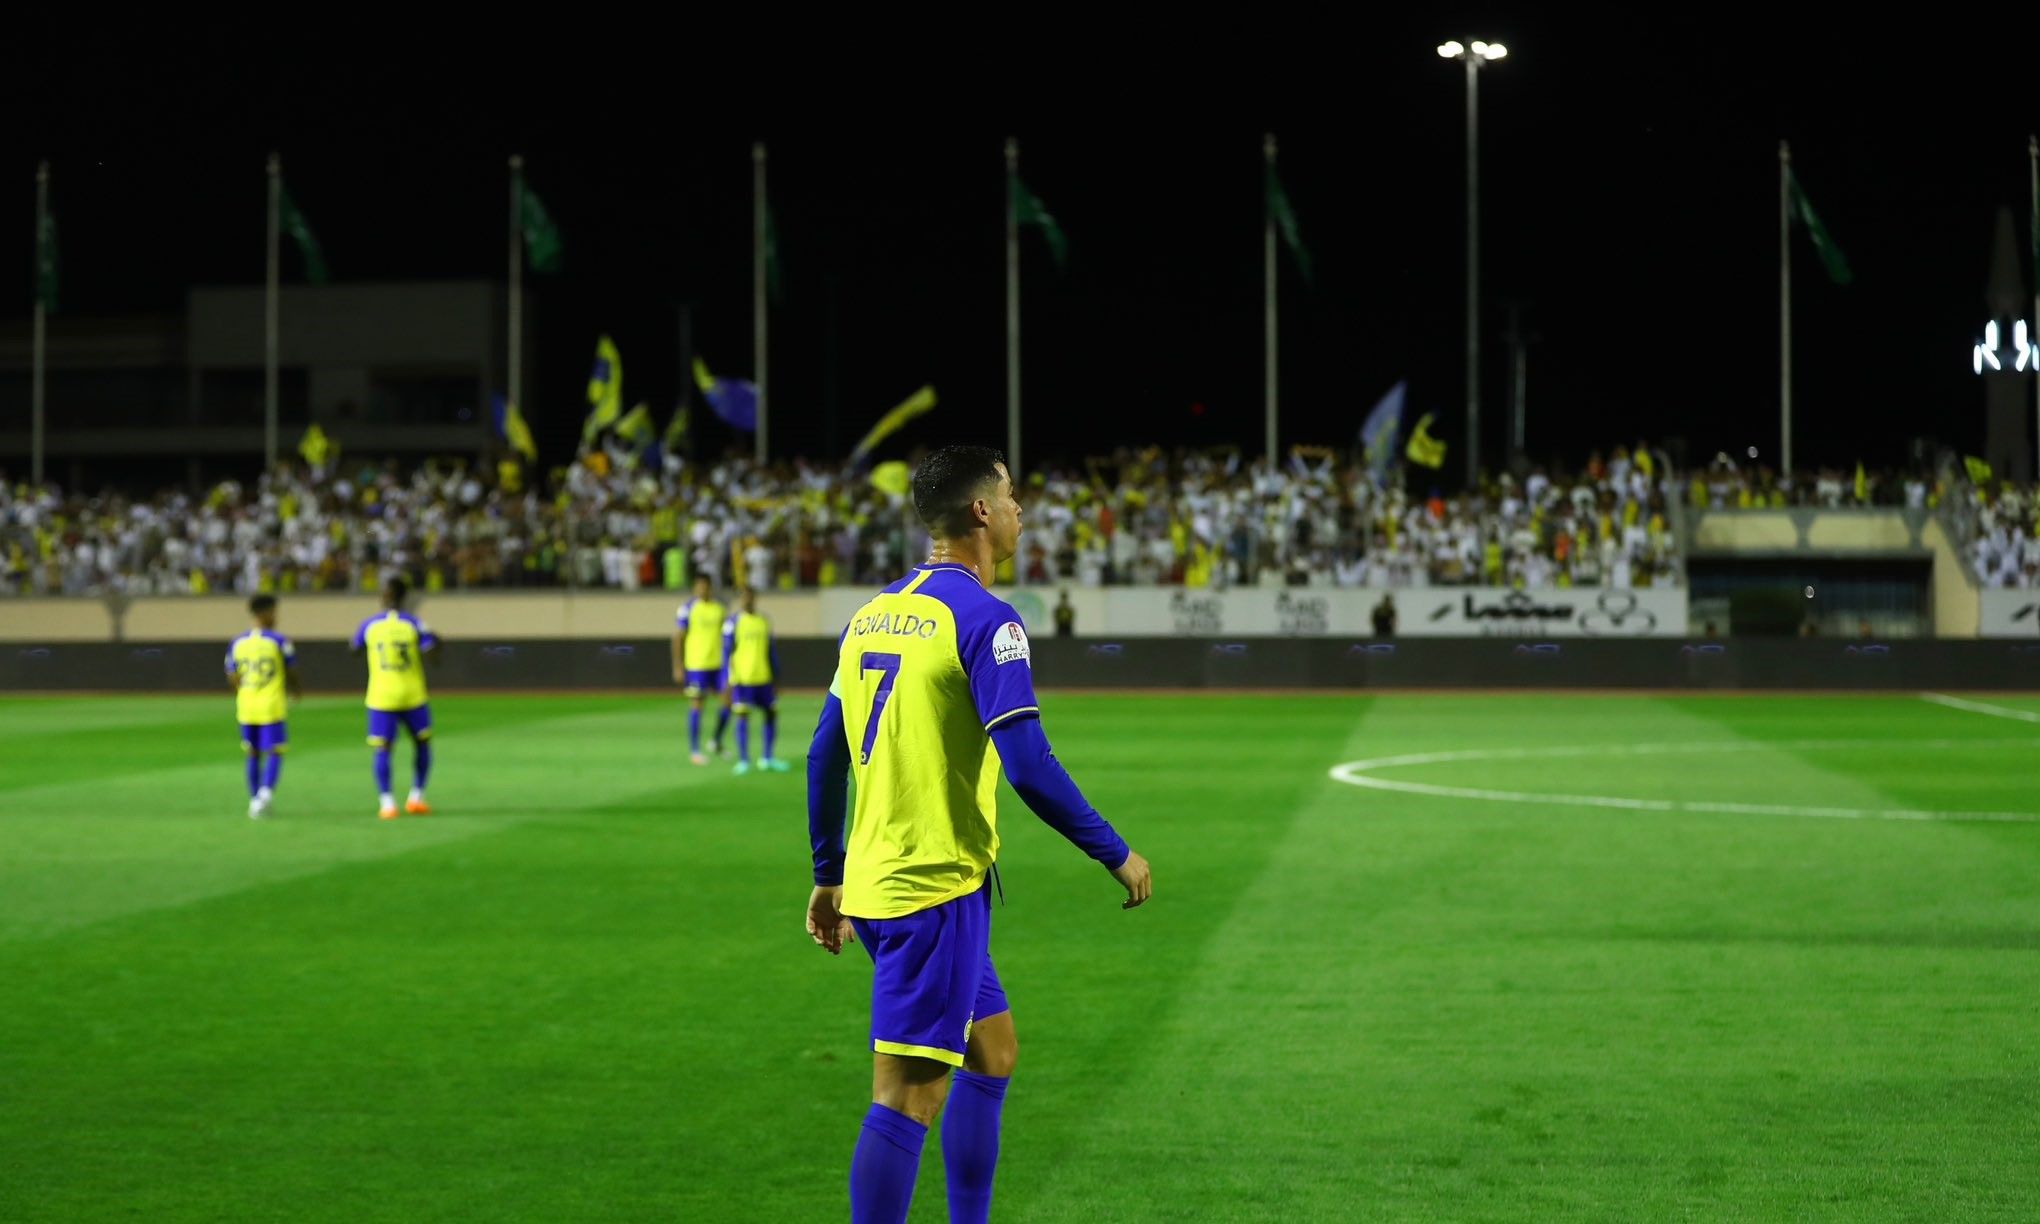 Al Shabab FC (Riyadh) - Wikipedia